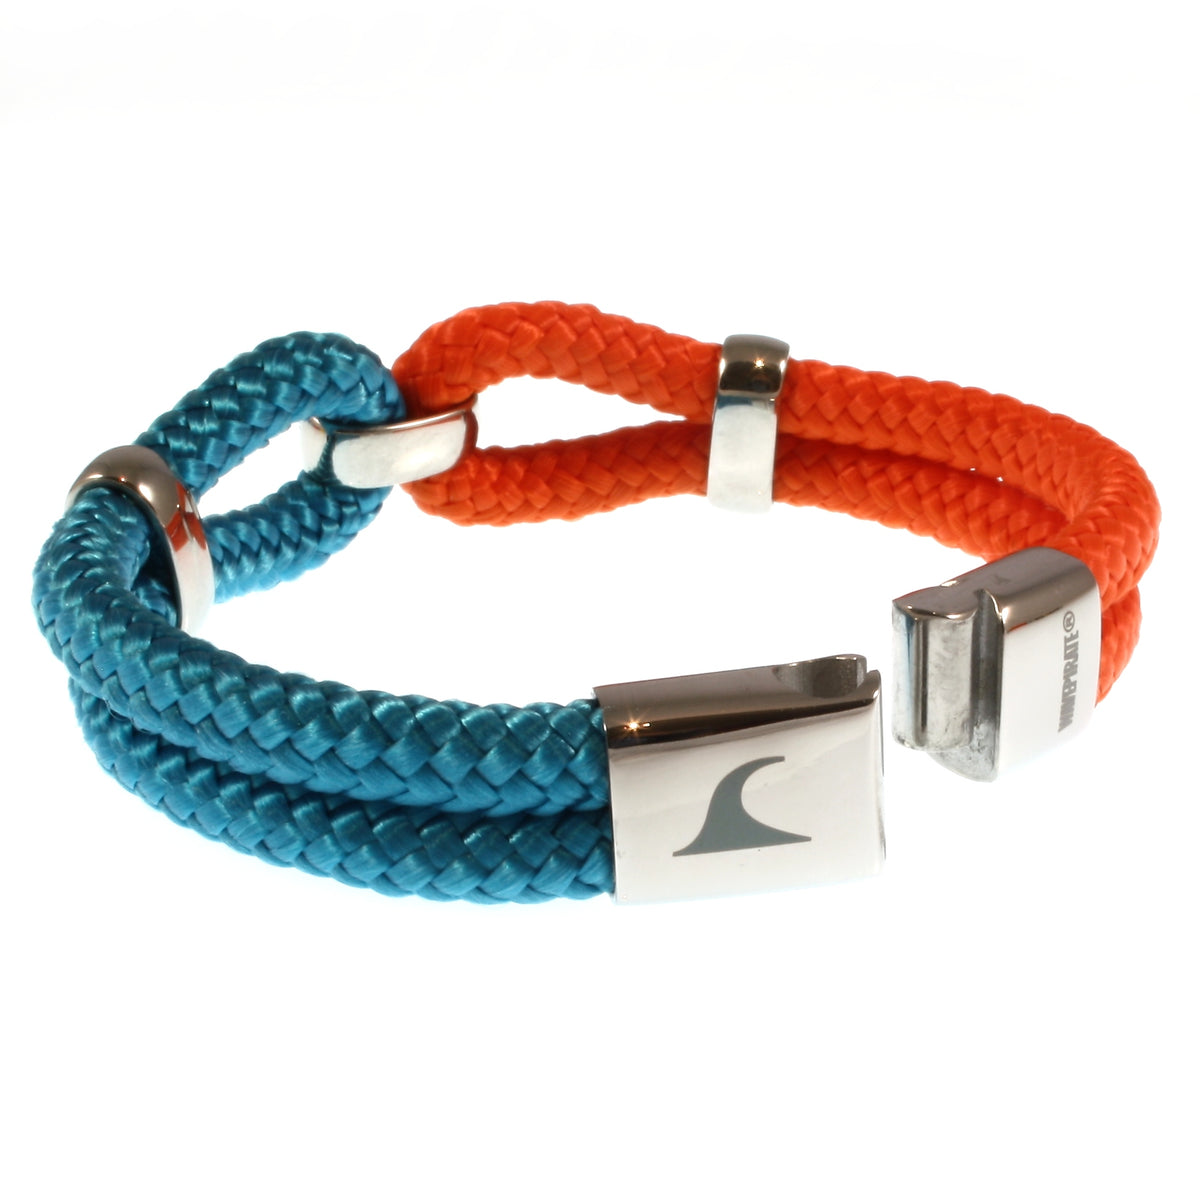 Damen-Segeltau-armband-roma-blau-orange-geflochten-Edelstahlverschluss-offen-wavepirate-shop-st